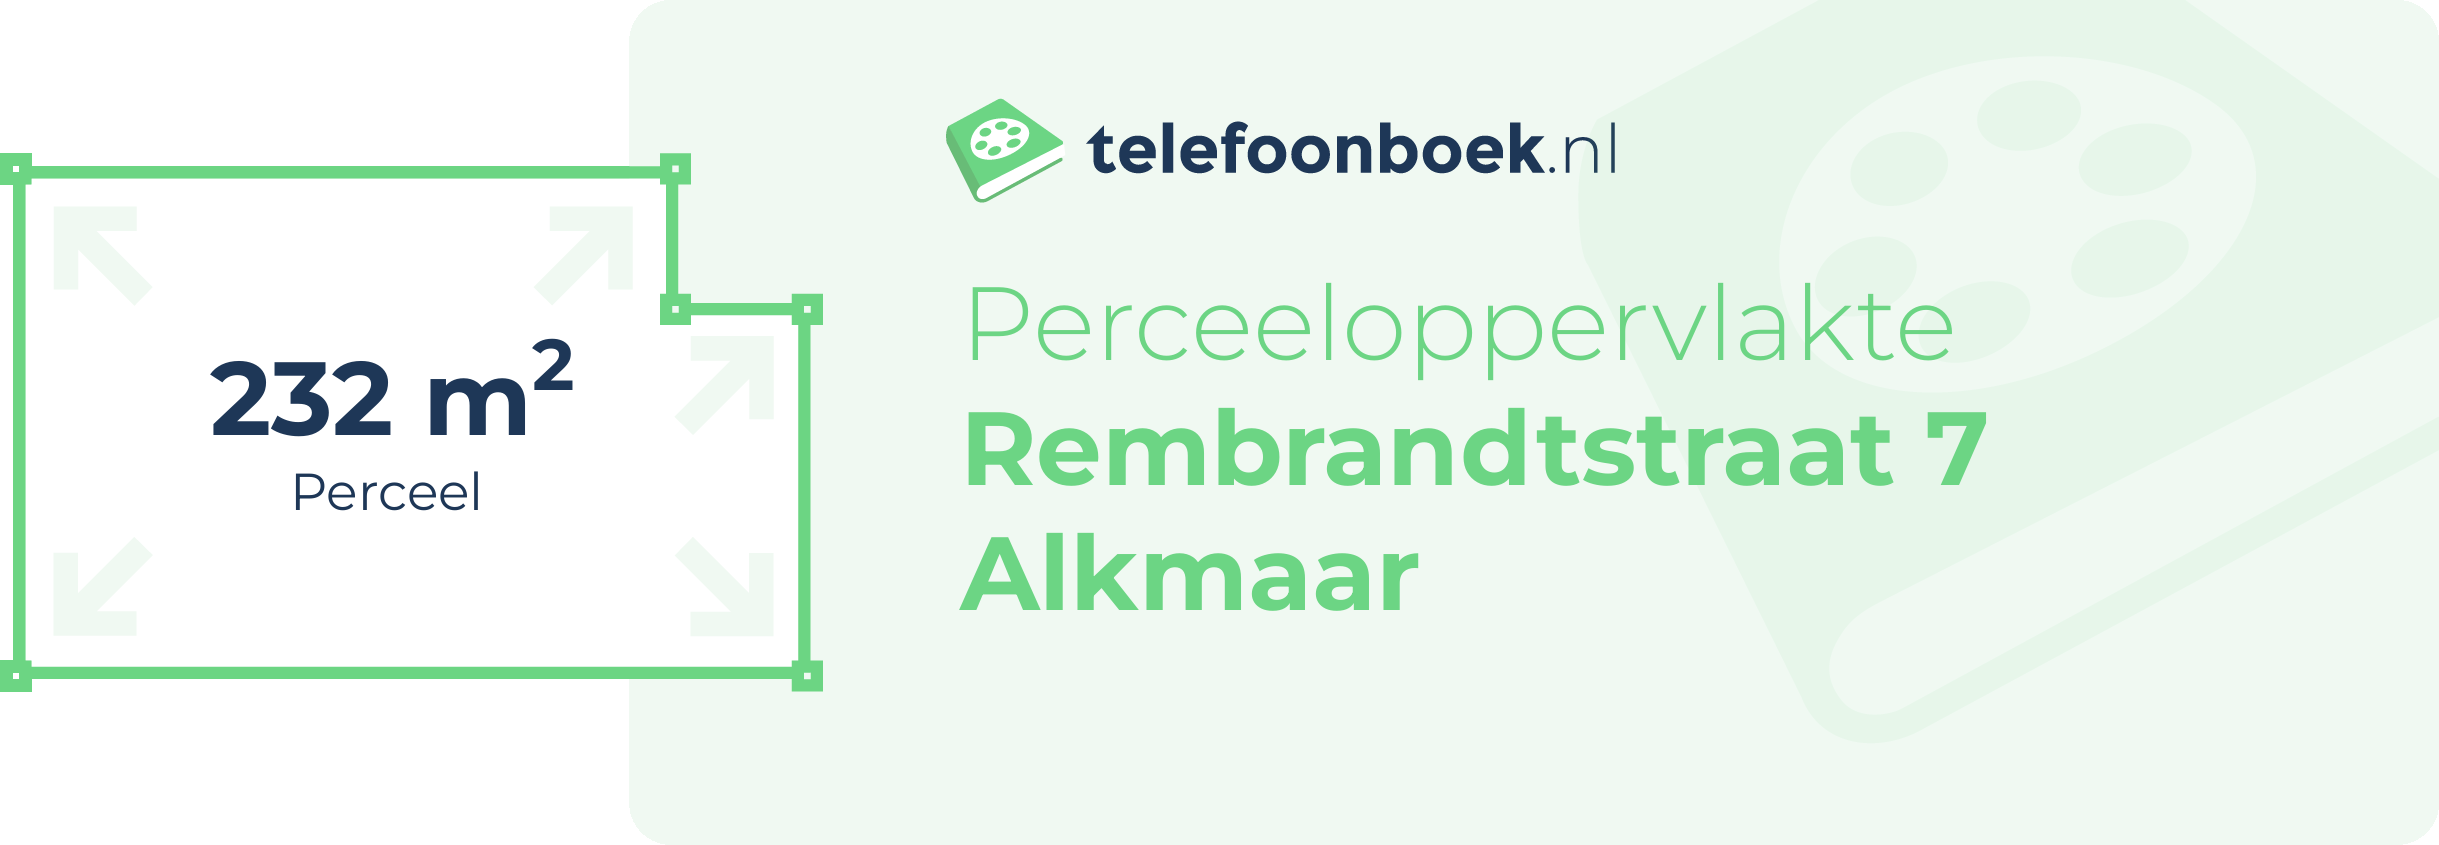 Perceeloppervlakte Rembrandtstraat 7 Alkmaar